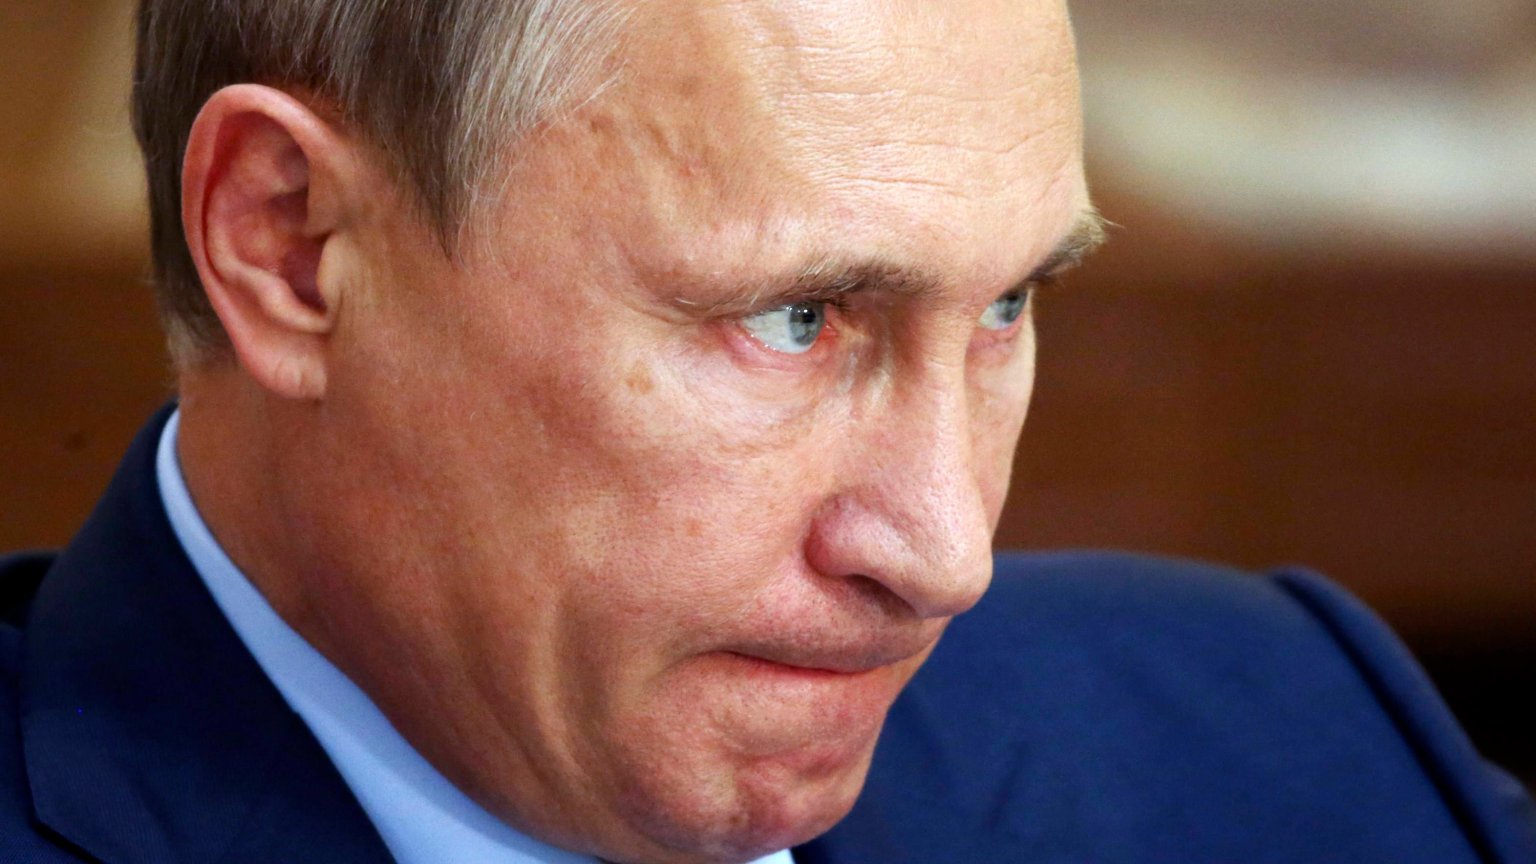 Цель Путина - доказать, что Кремль может убить кого угодно и где угодно: 8 фактов, которые нужно знать о громком деле Скрипаля, - политолог